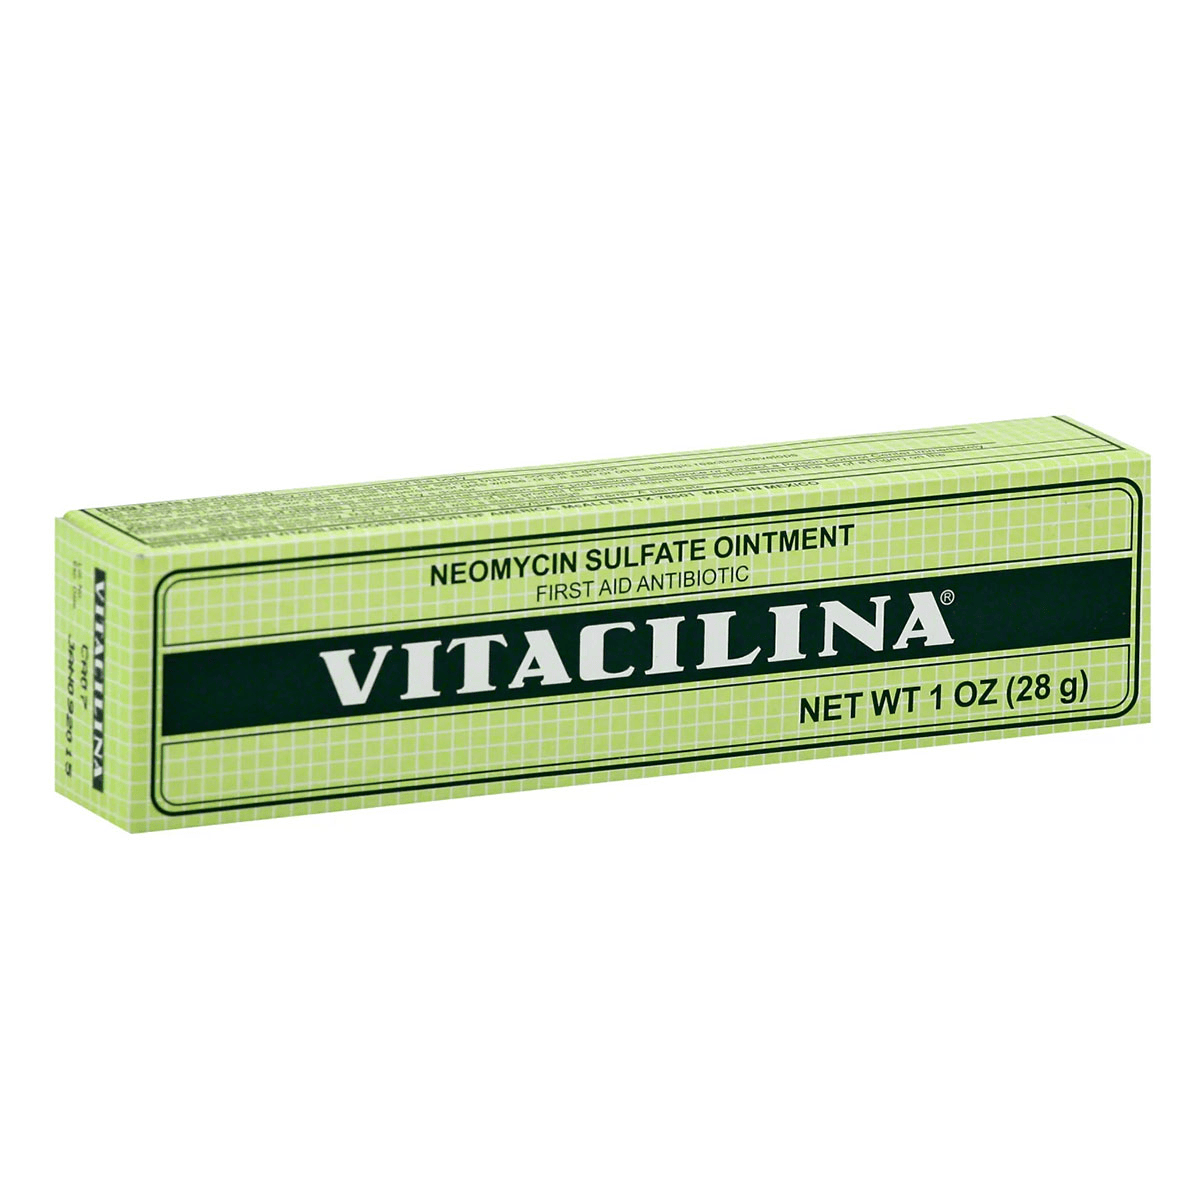 VITACILINA 100 28 GR